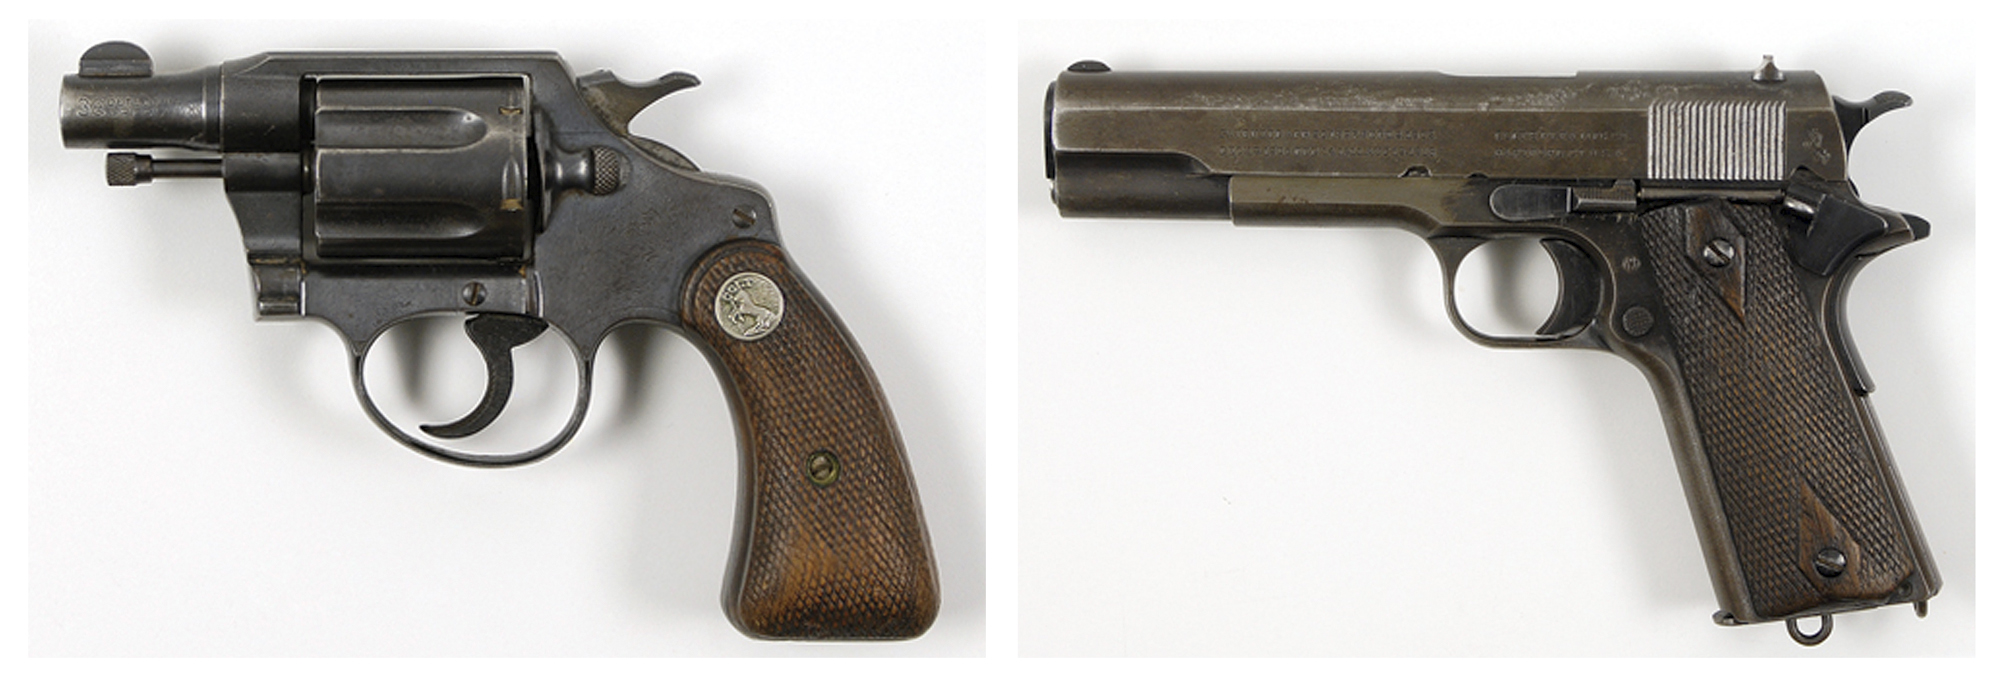 Utan självaste Bonnie och Clydes vapen de använde under sina rån i depressionens USA.